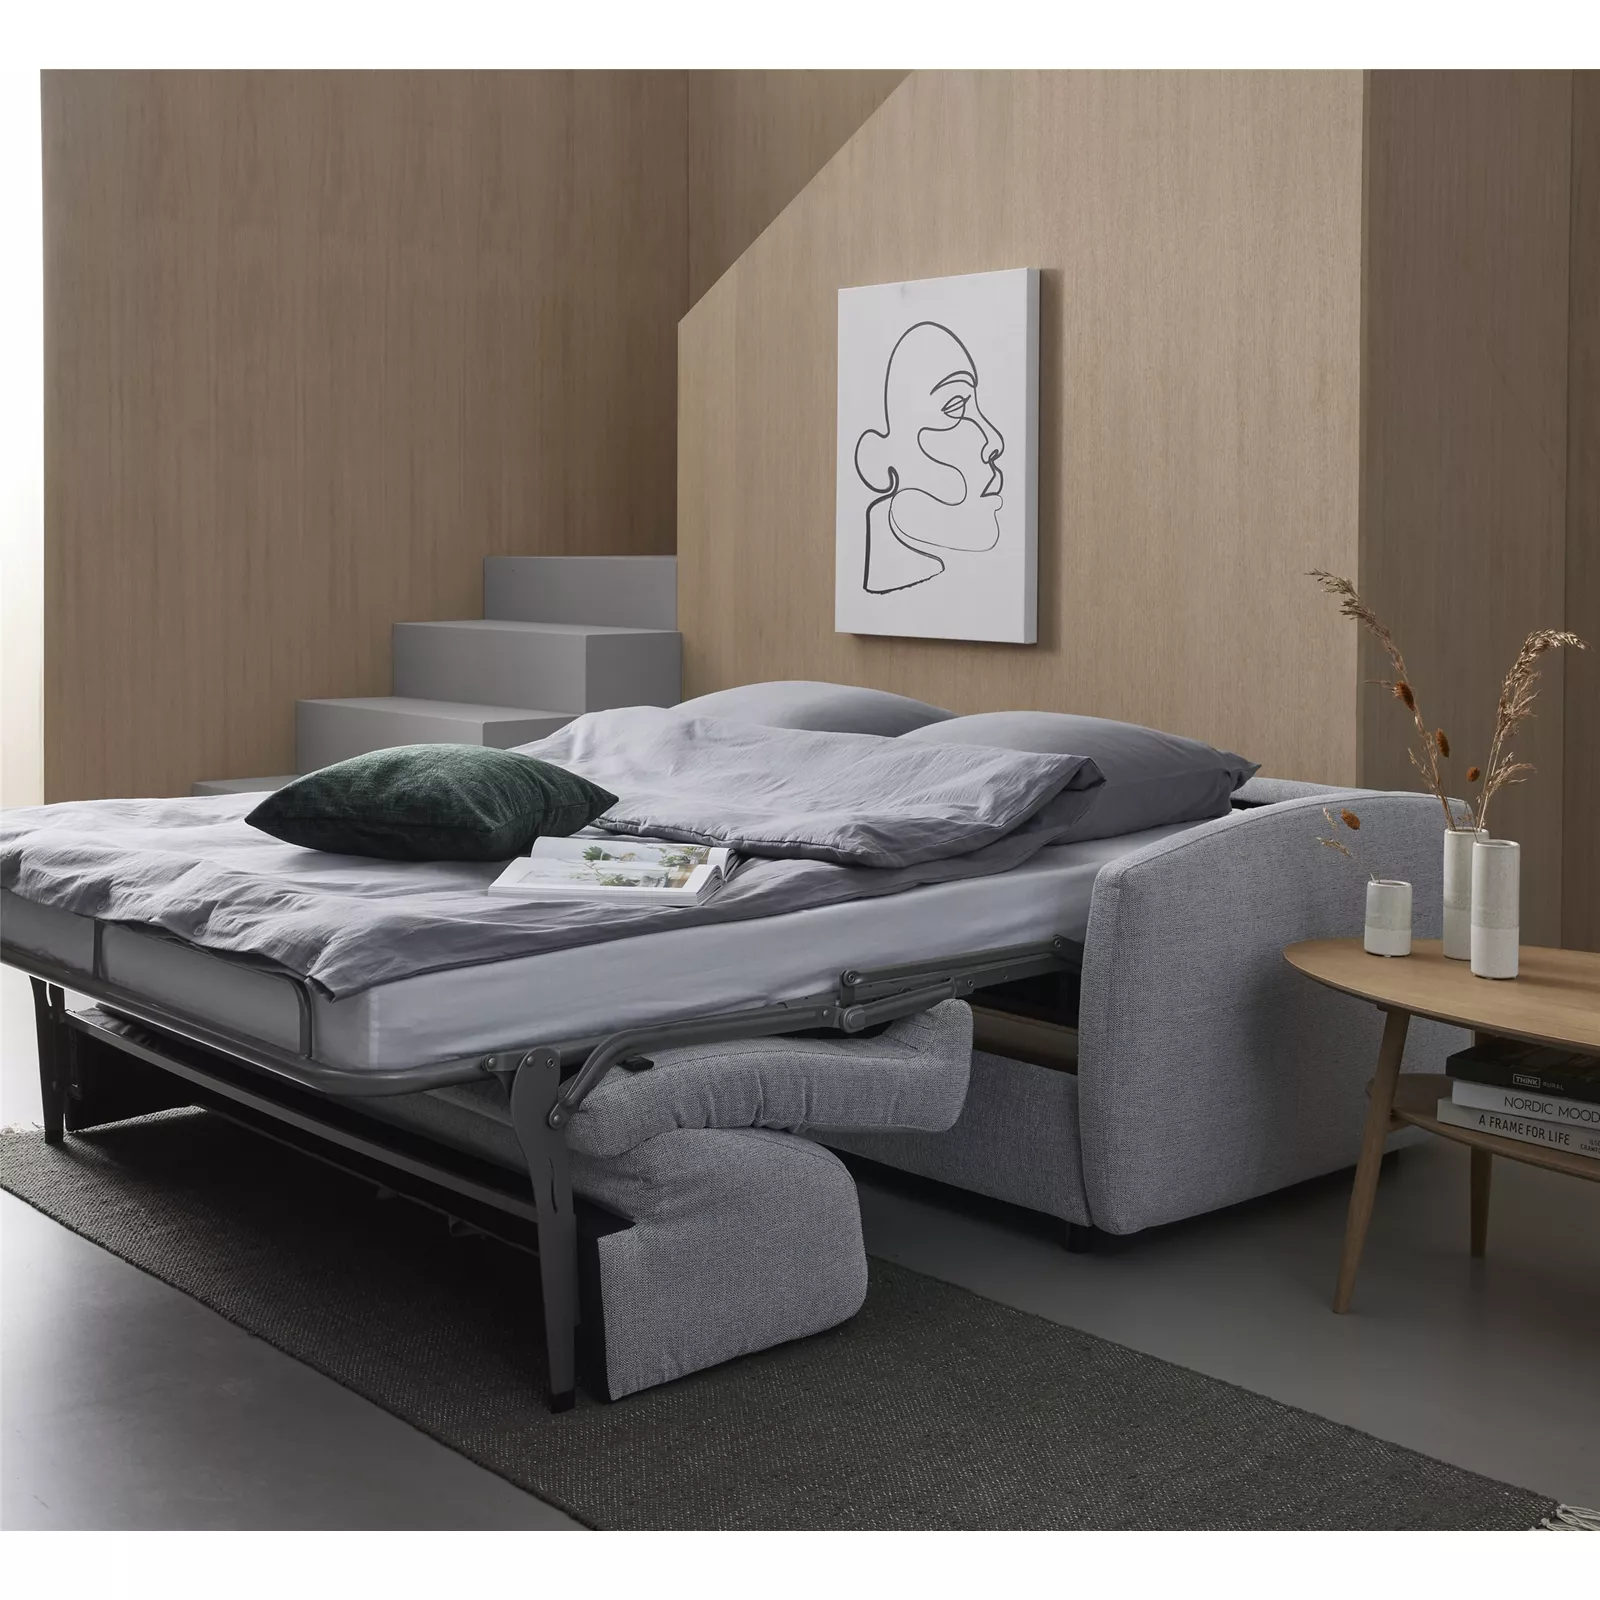 Rida sovesofa: lille sofa, stor seng